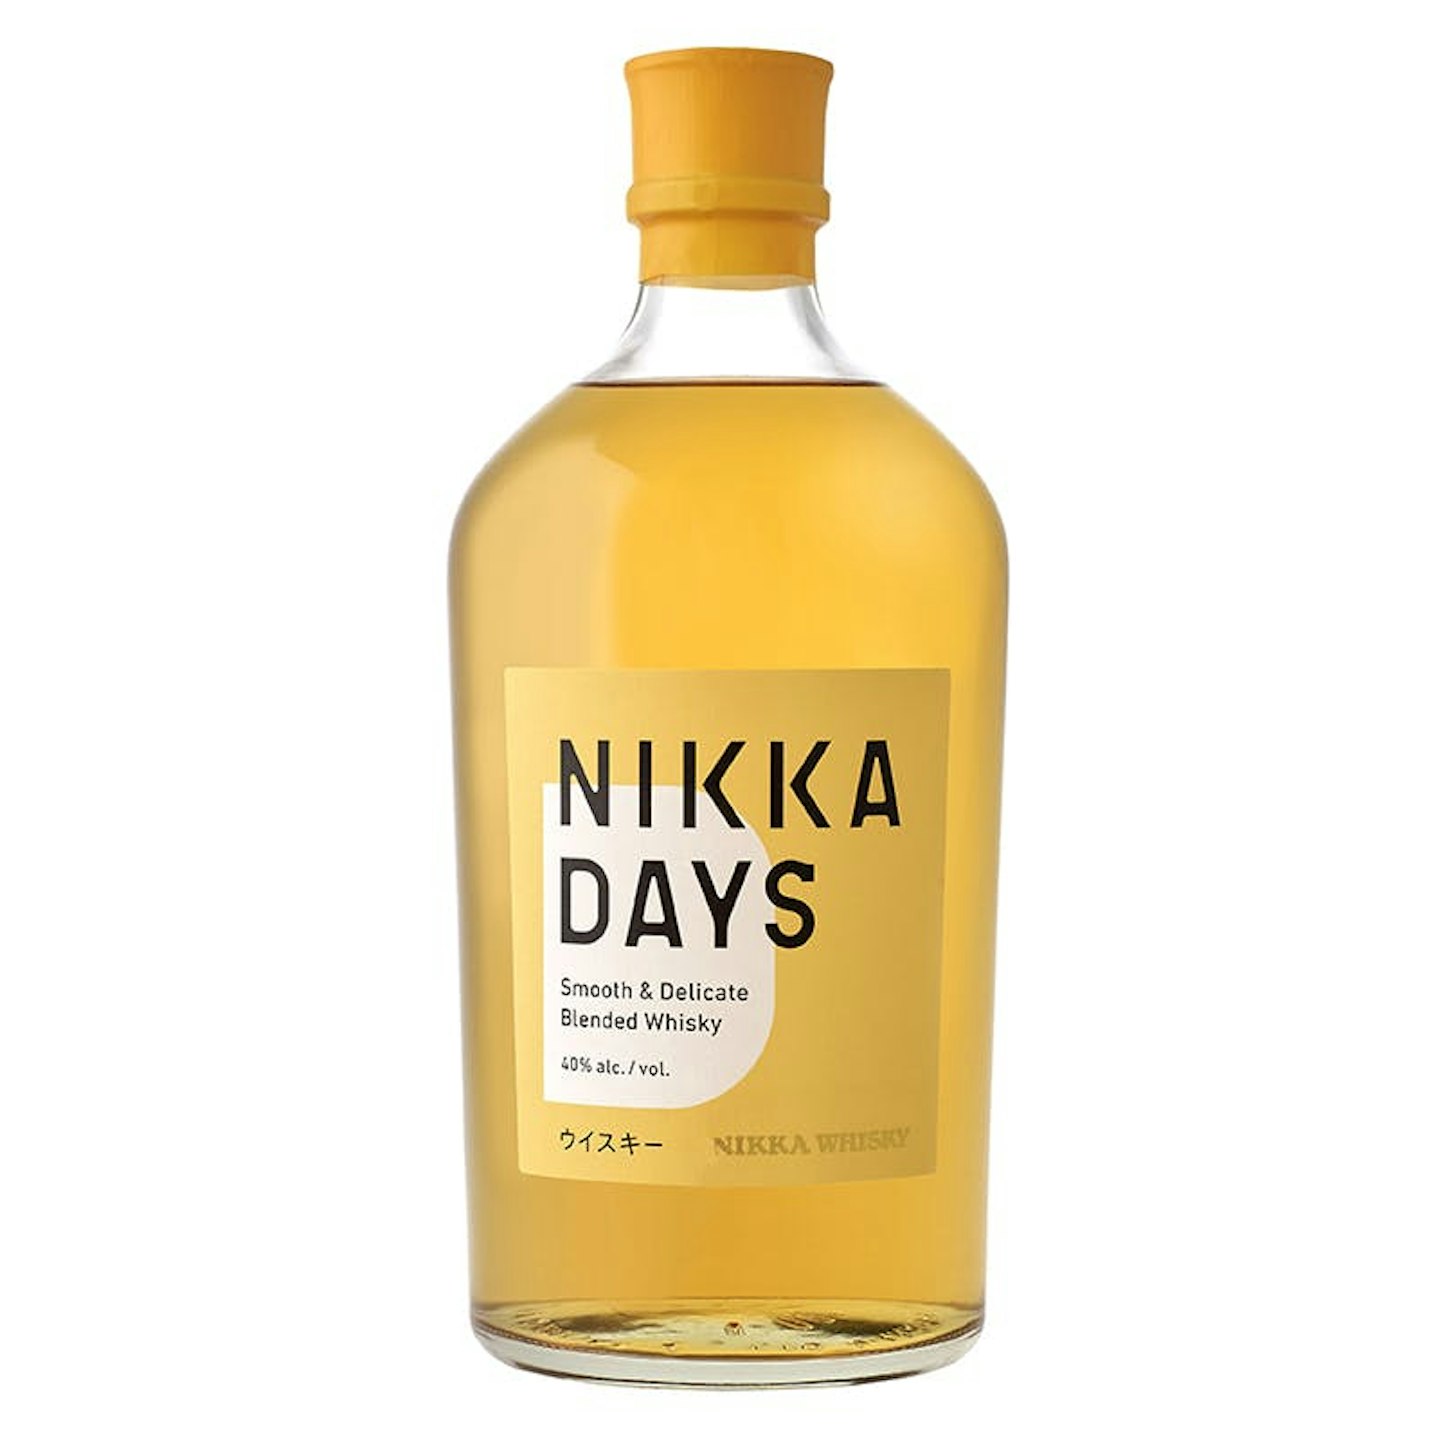 Nikka Days - Blended Whisky